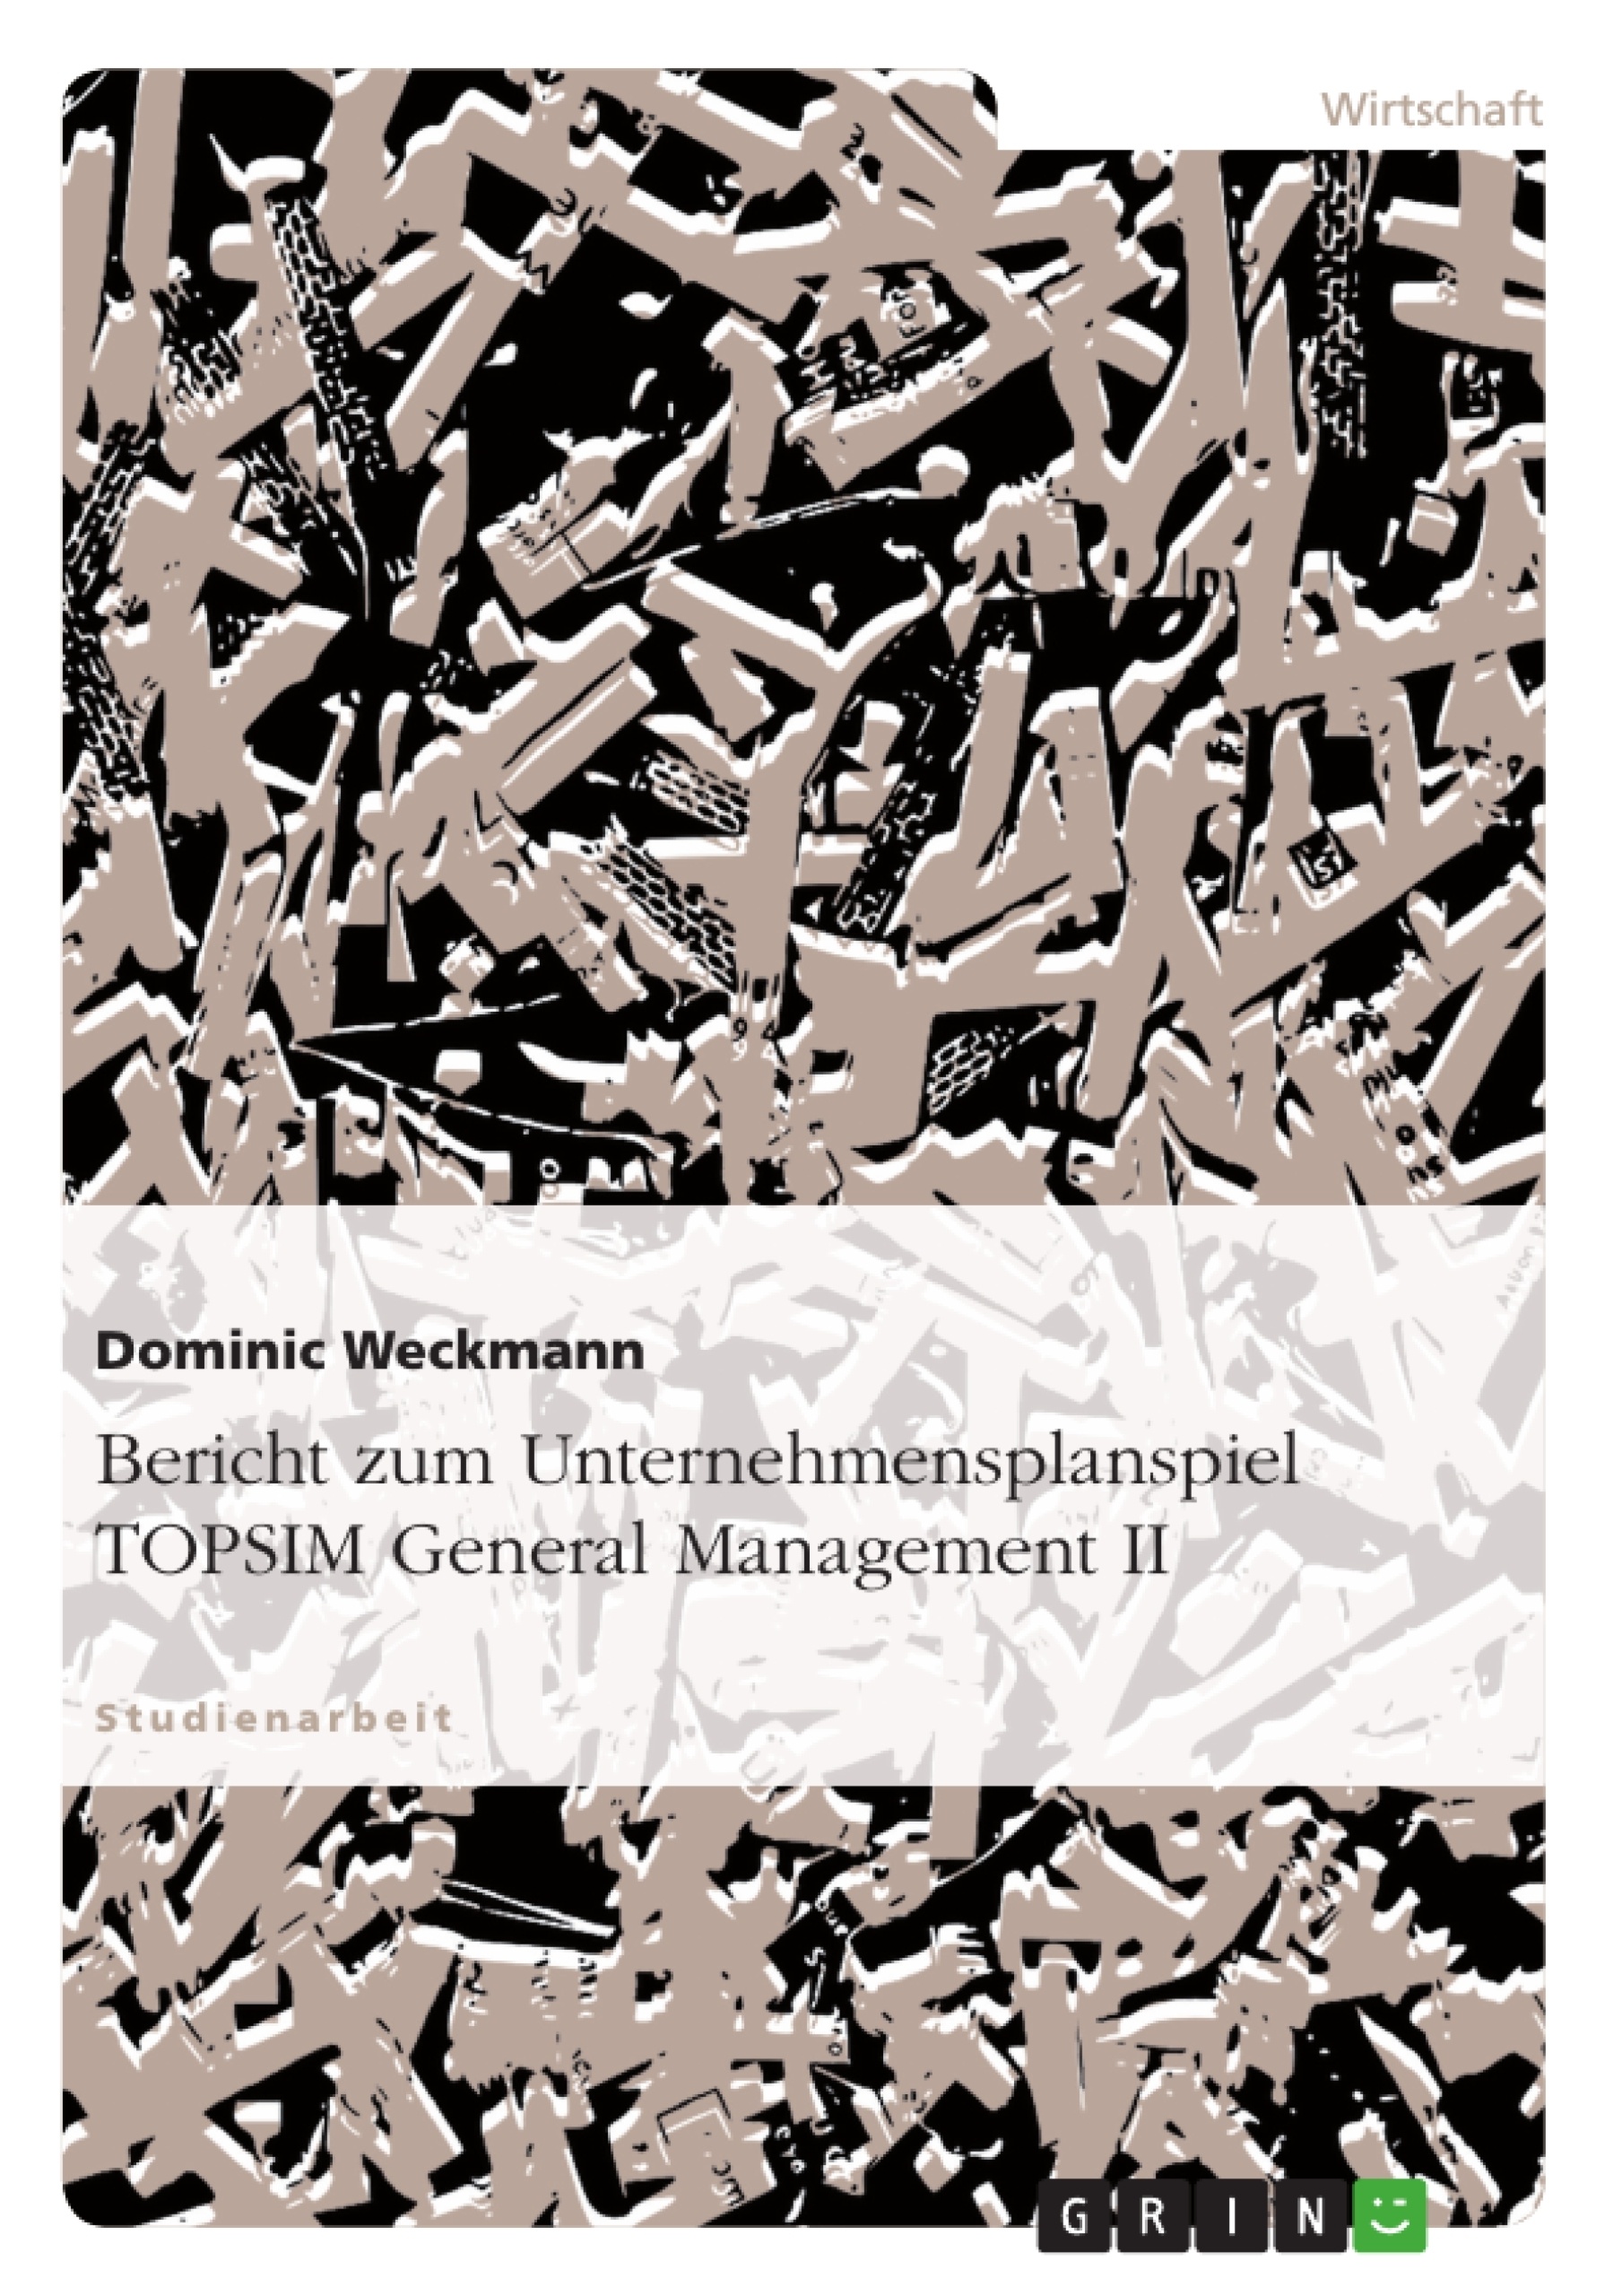 Título: Bericht zum Unternehmensplanspiel TOPSIM General Management II